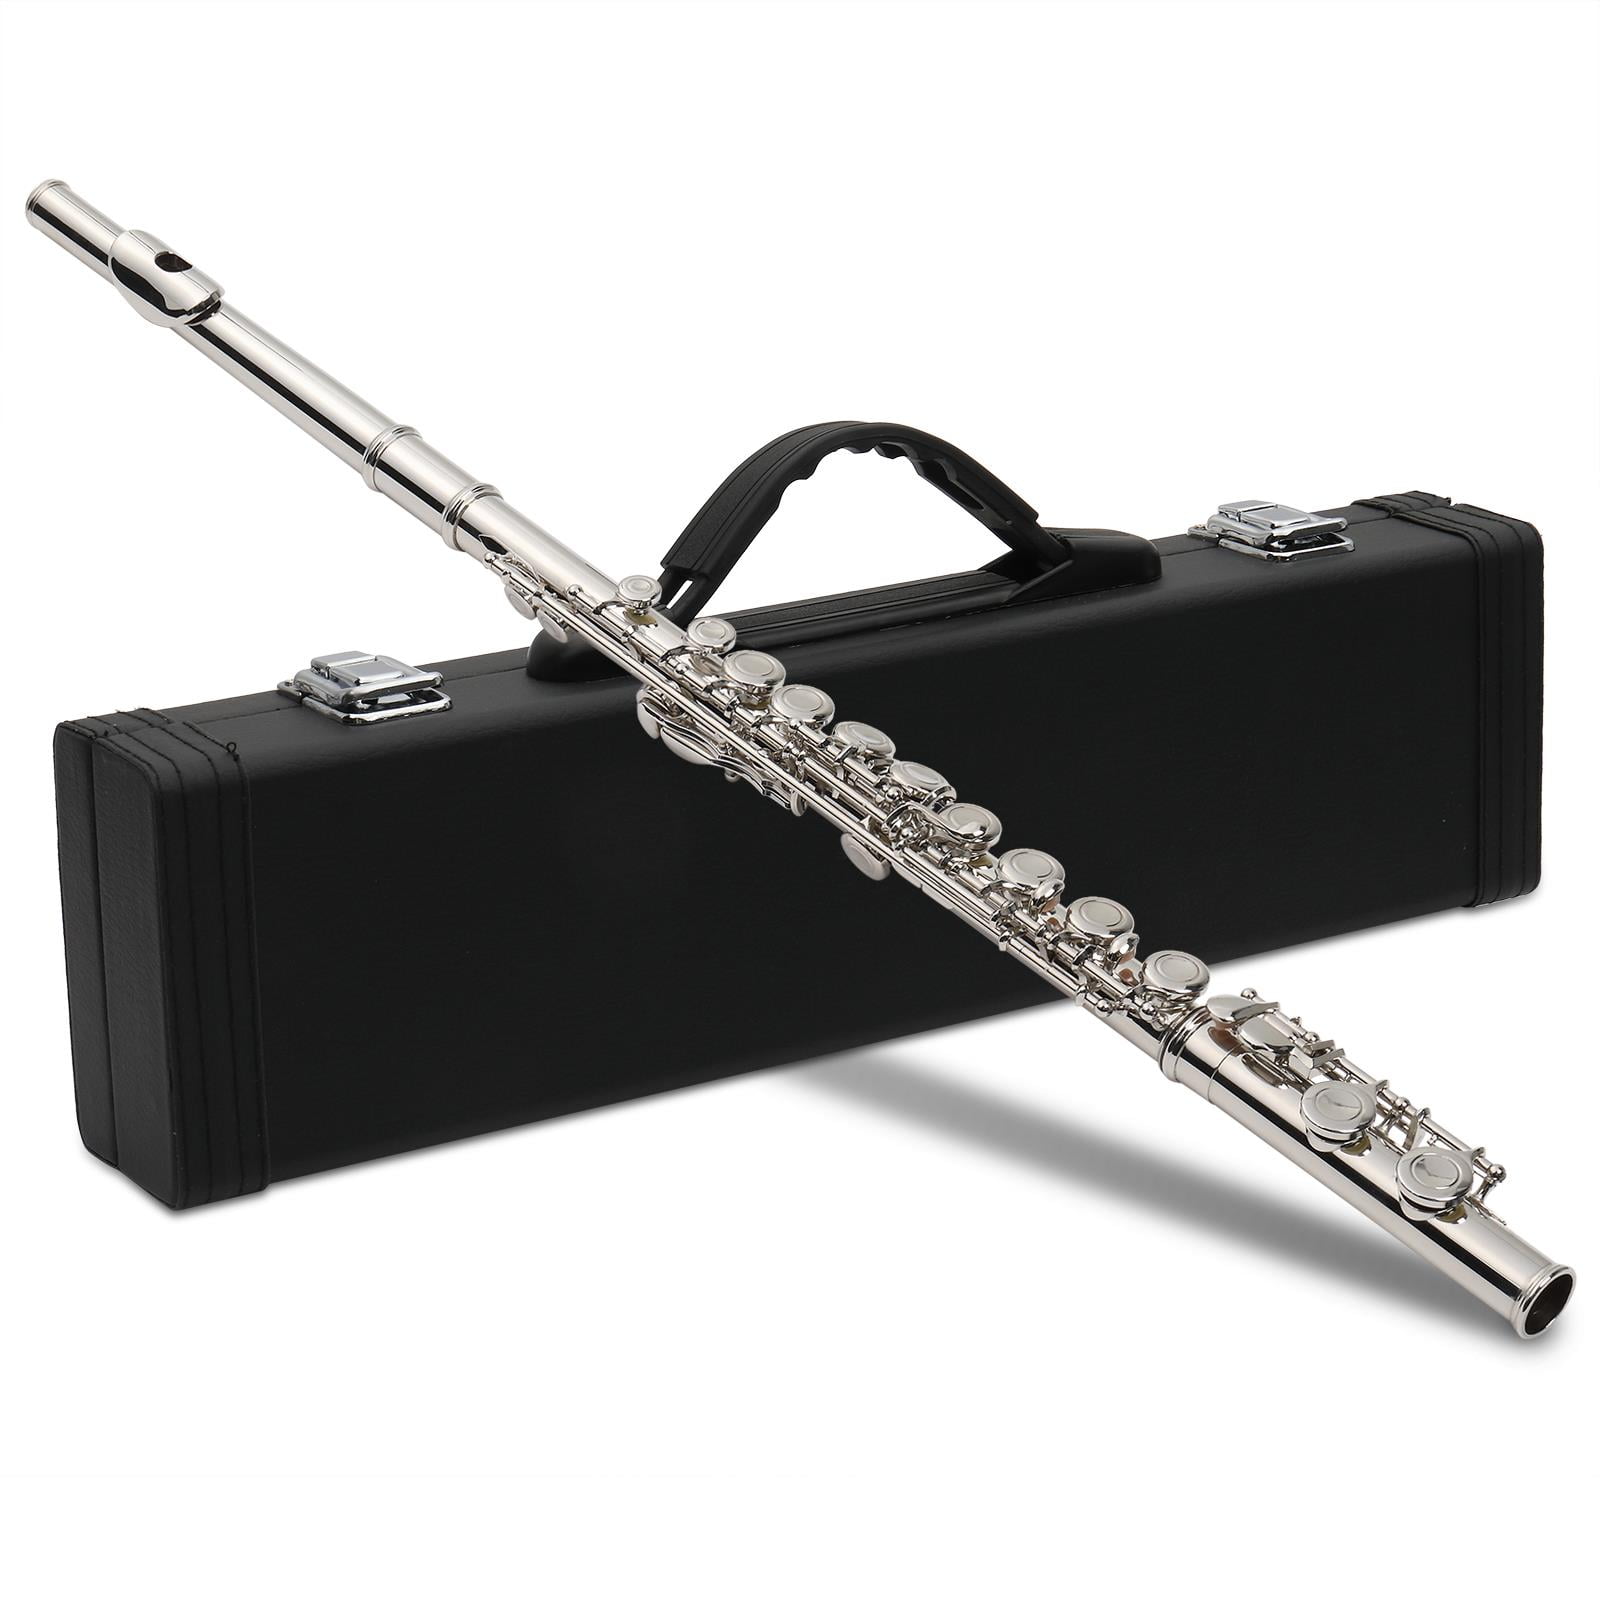 Merano Black Flute with Case - Walmart.com